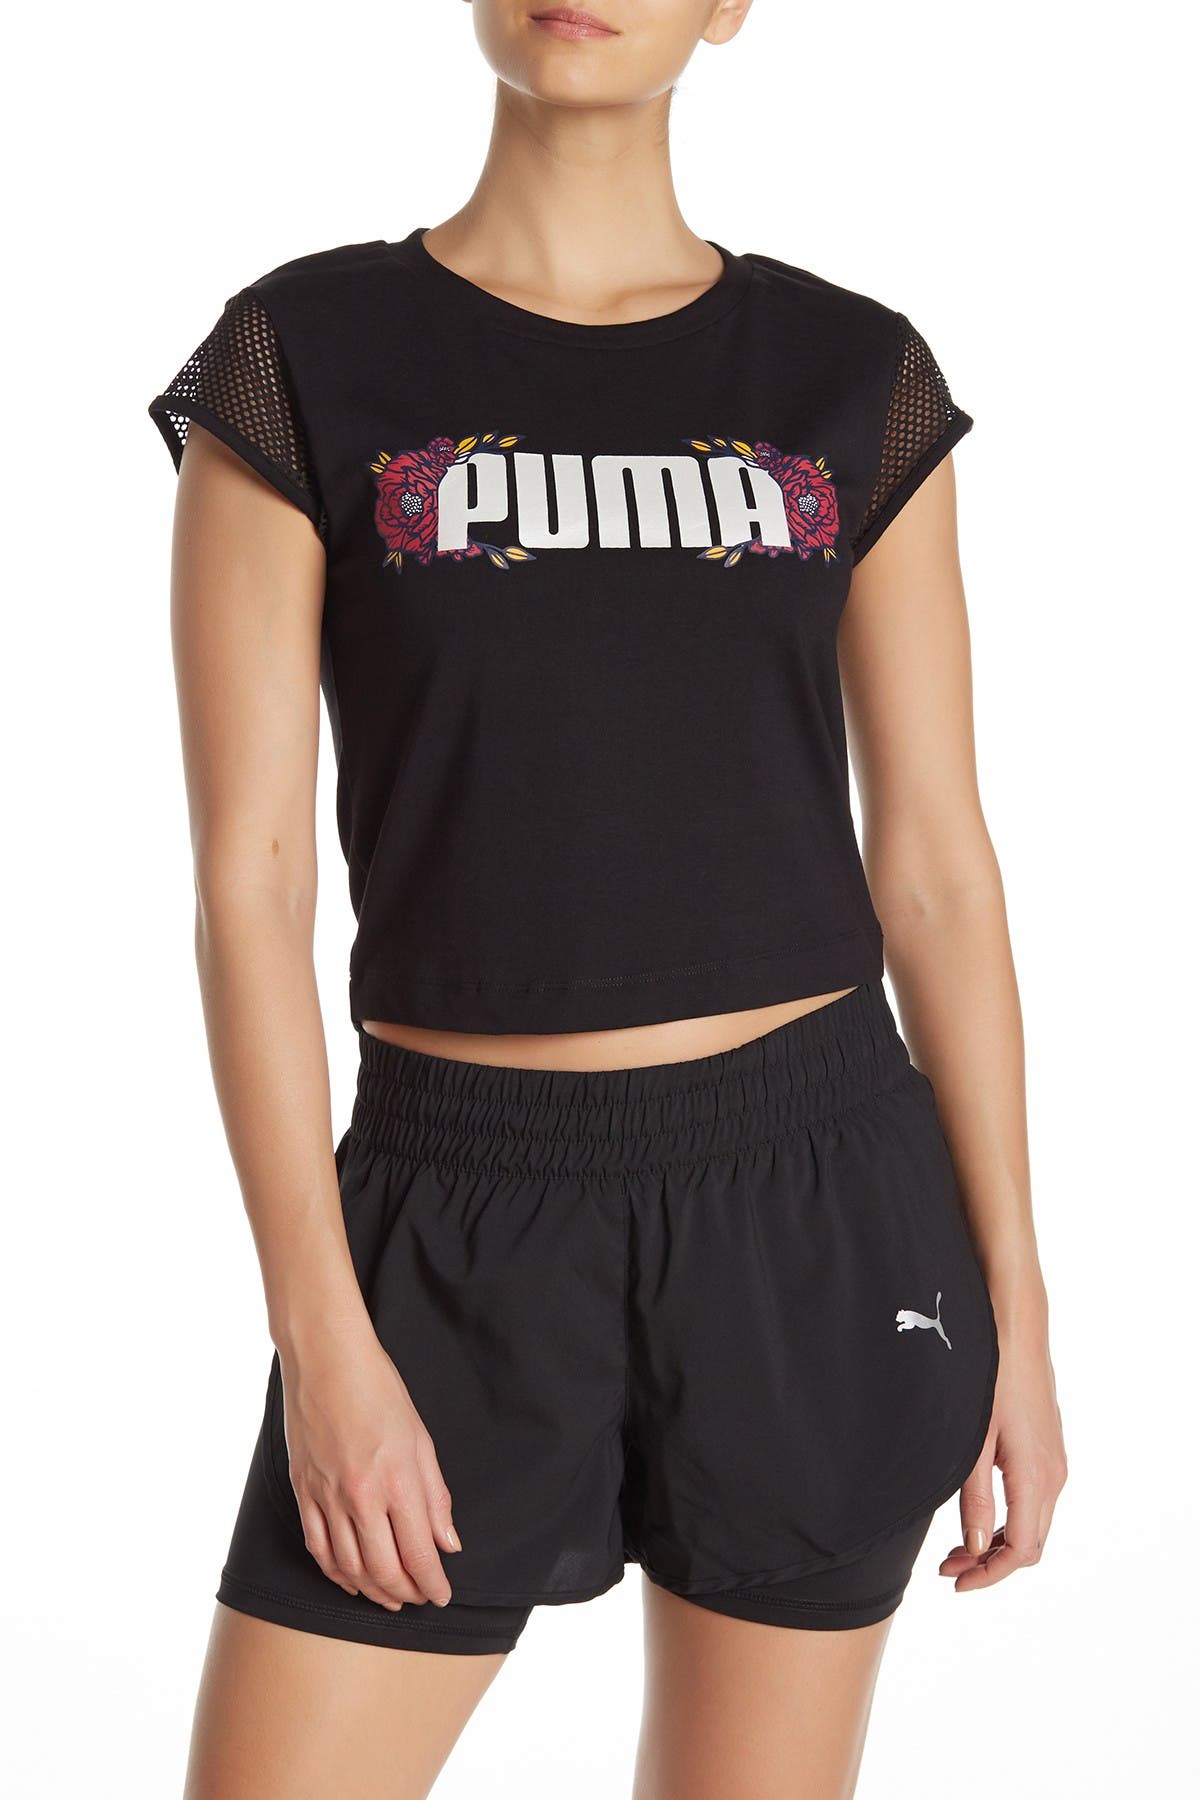 puma flourish shorts